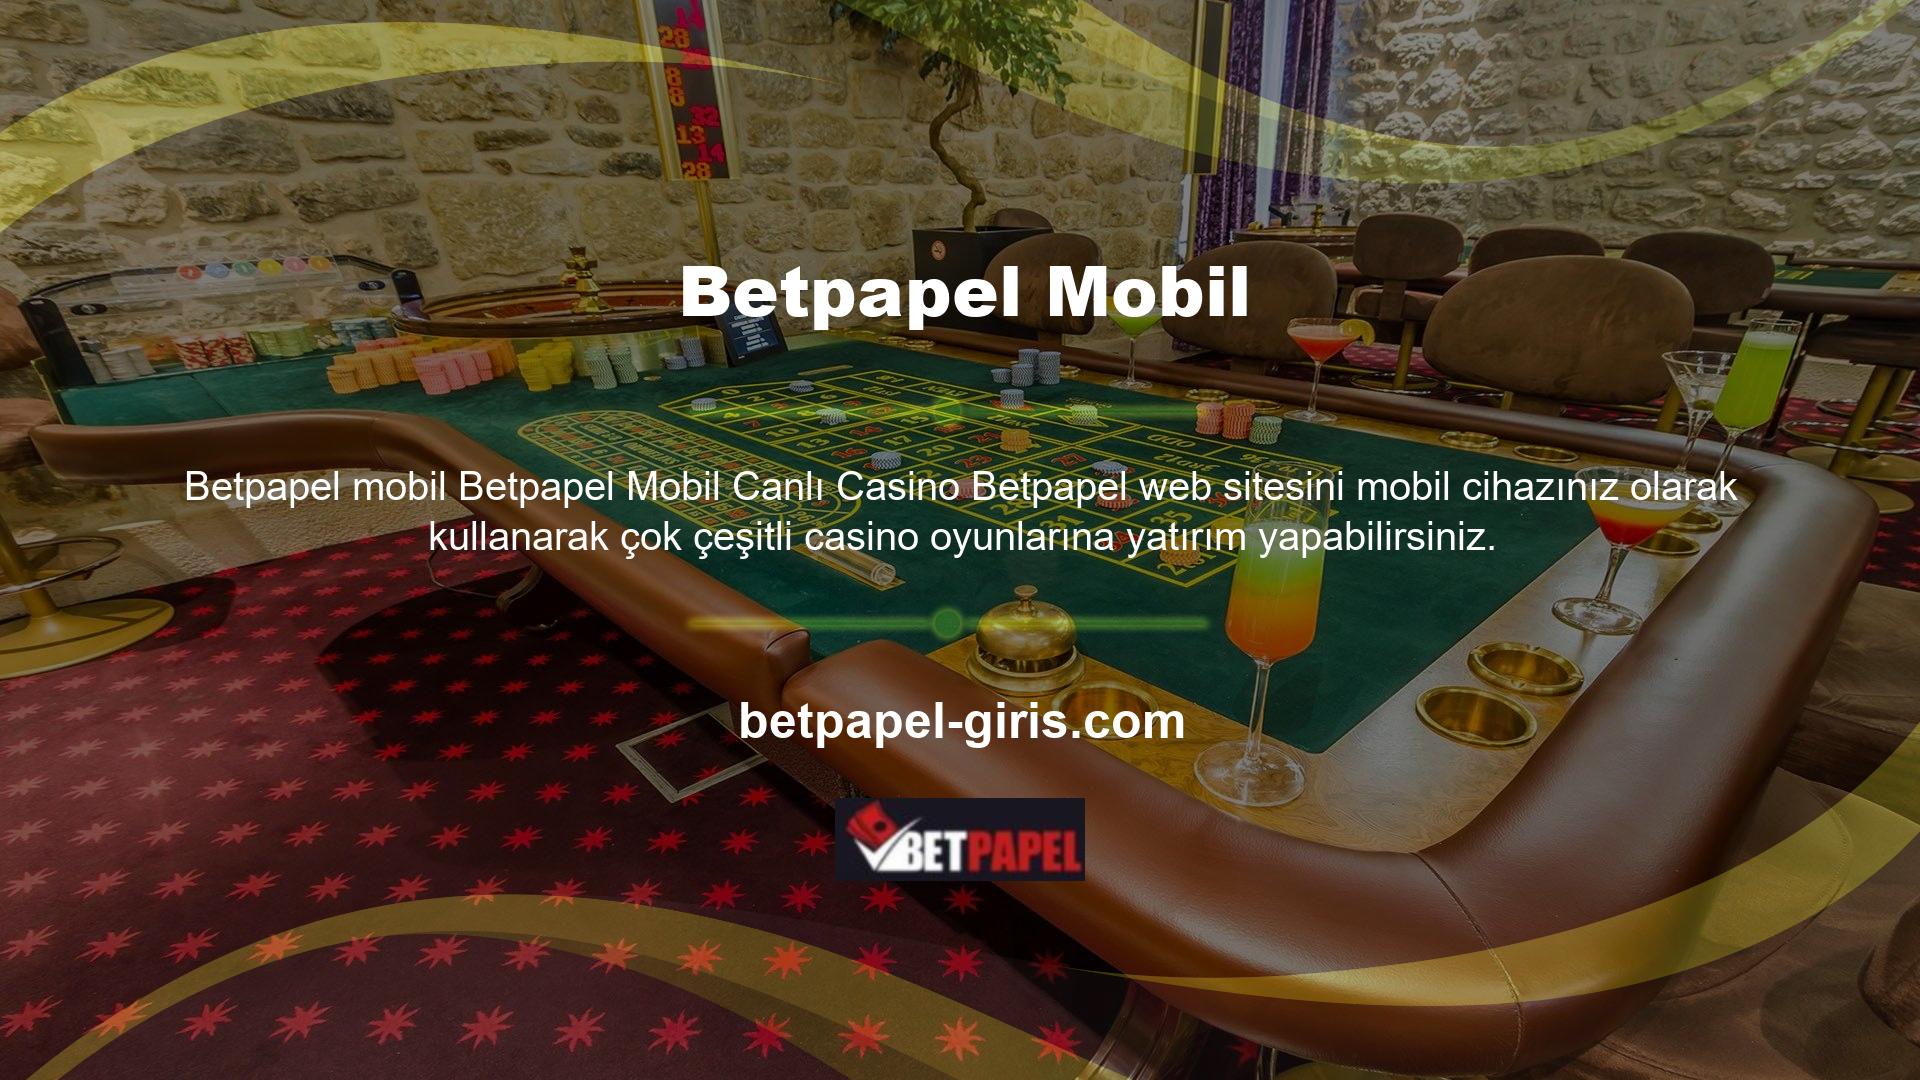 Betpapel mobil cihazlardaki canlı casino oyunları oldukça kullanışlıdır ve en yüksek kalitede çalışır